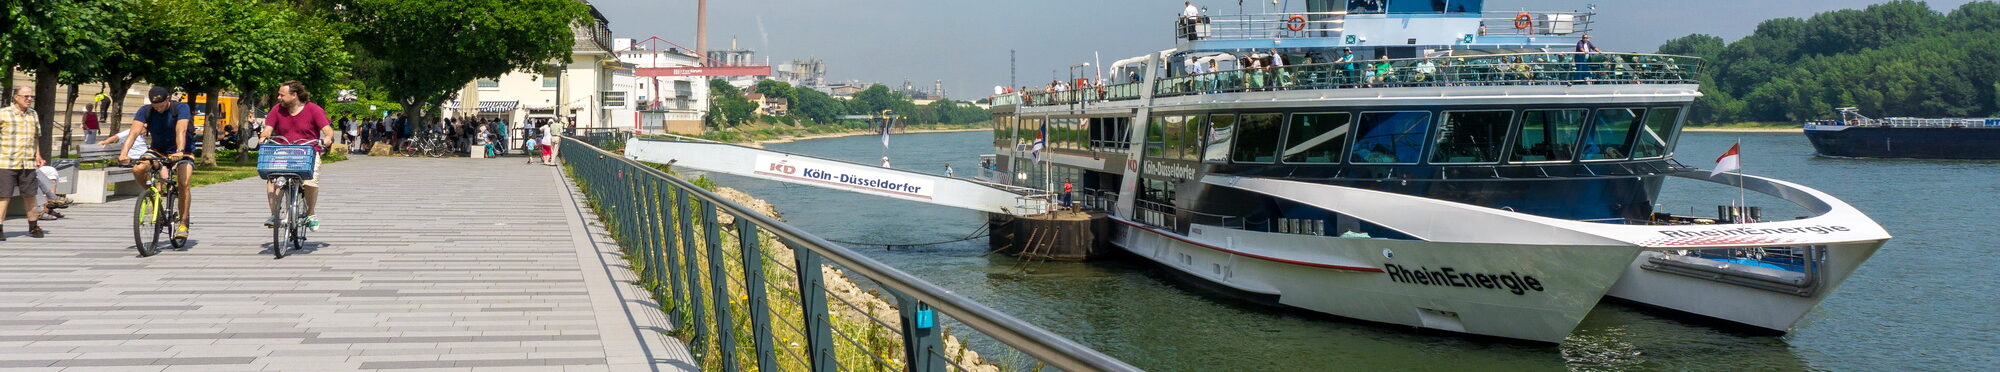 Rheinpromenade mit KD-Anleger